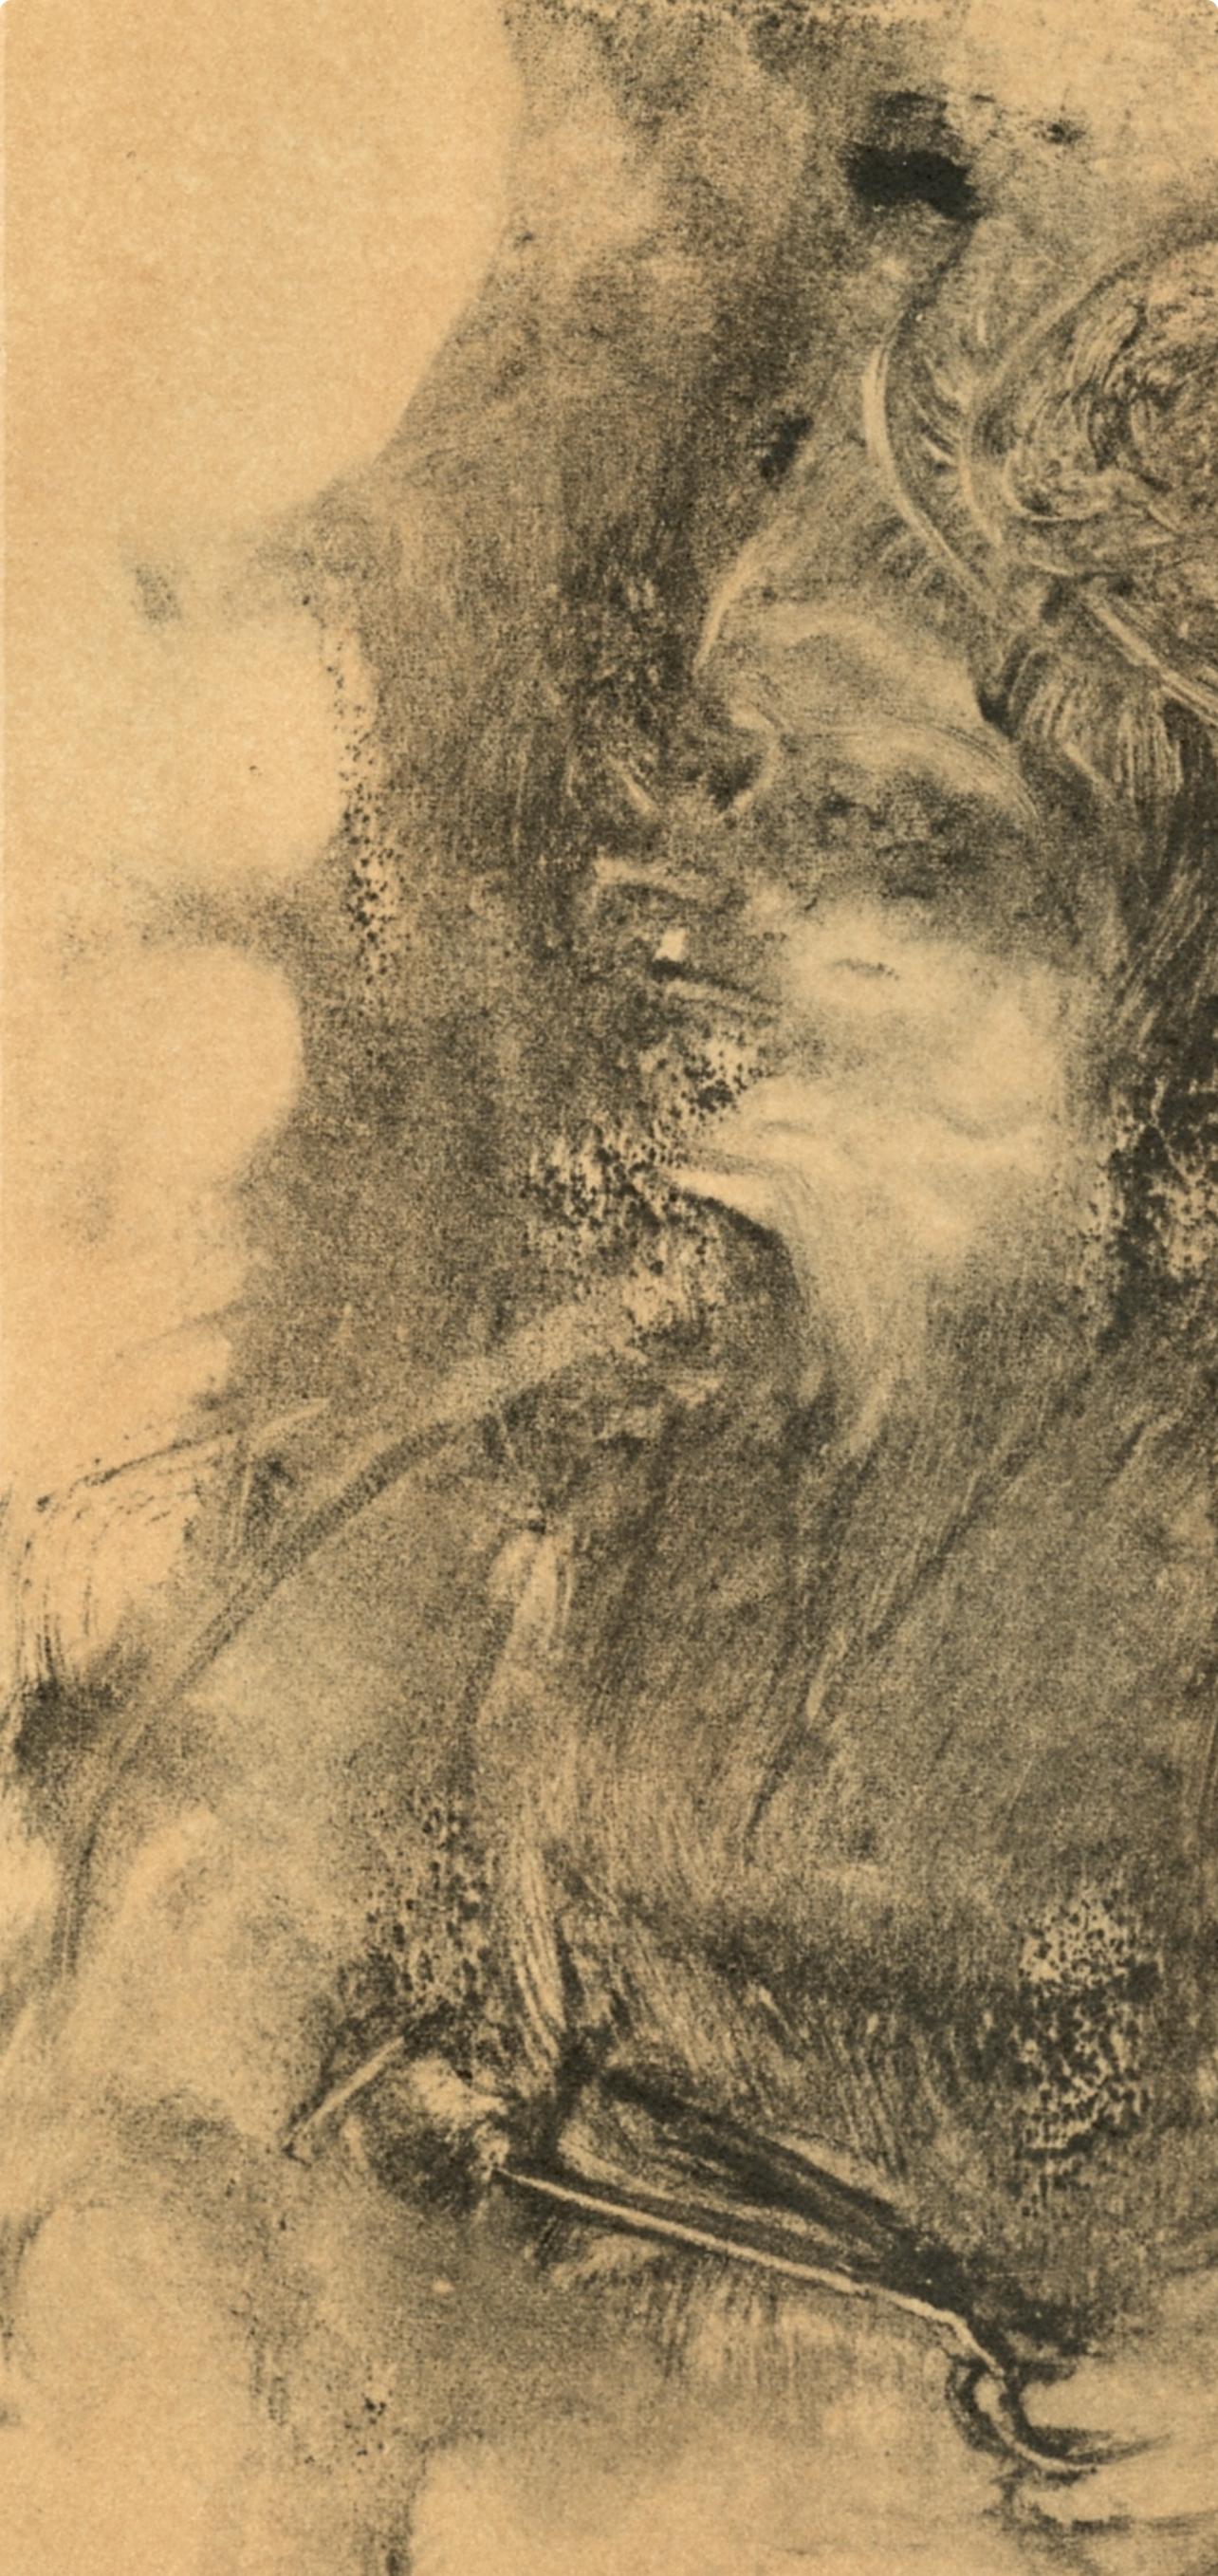 Degas, Les Ciseaux, Les Monotypes (after) - Impressionist Print by Edgar Degas